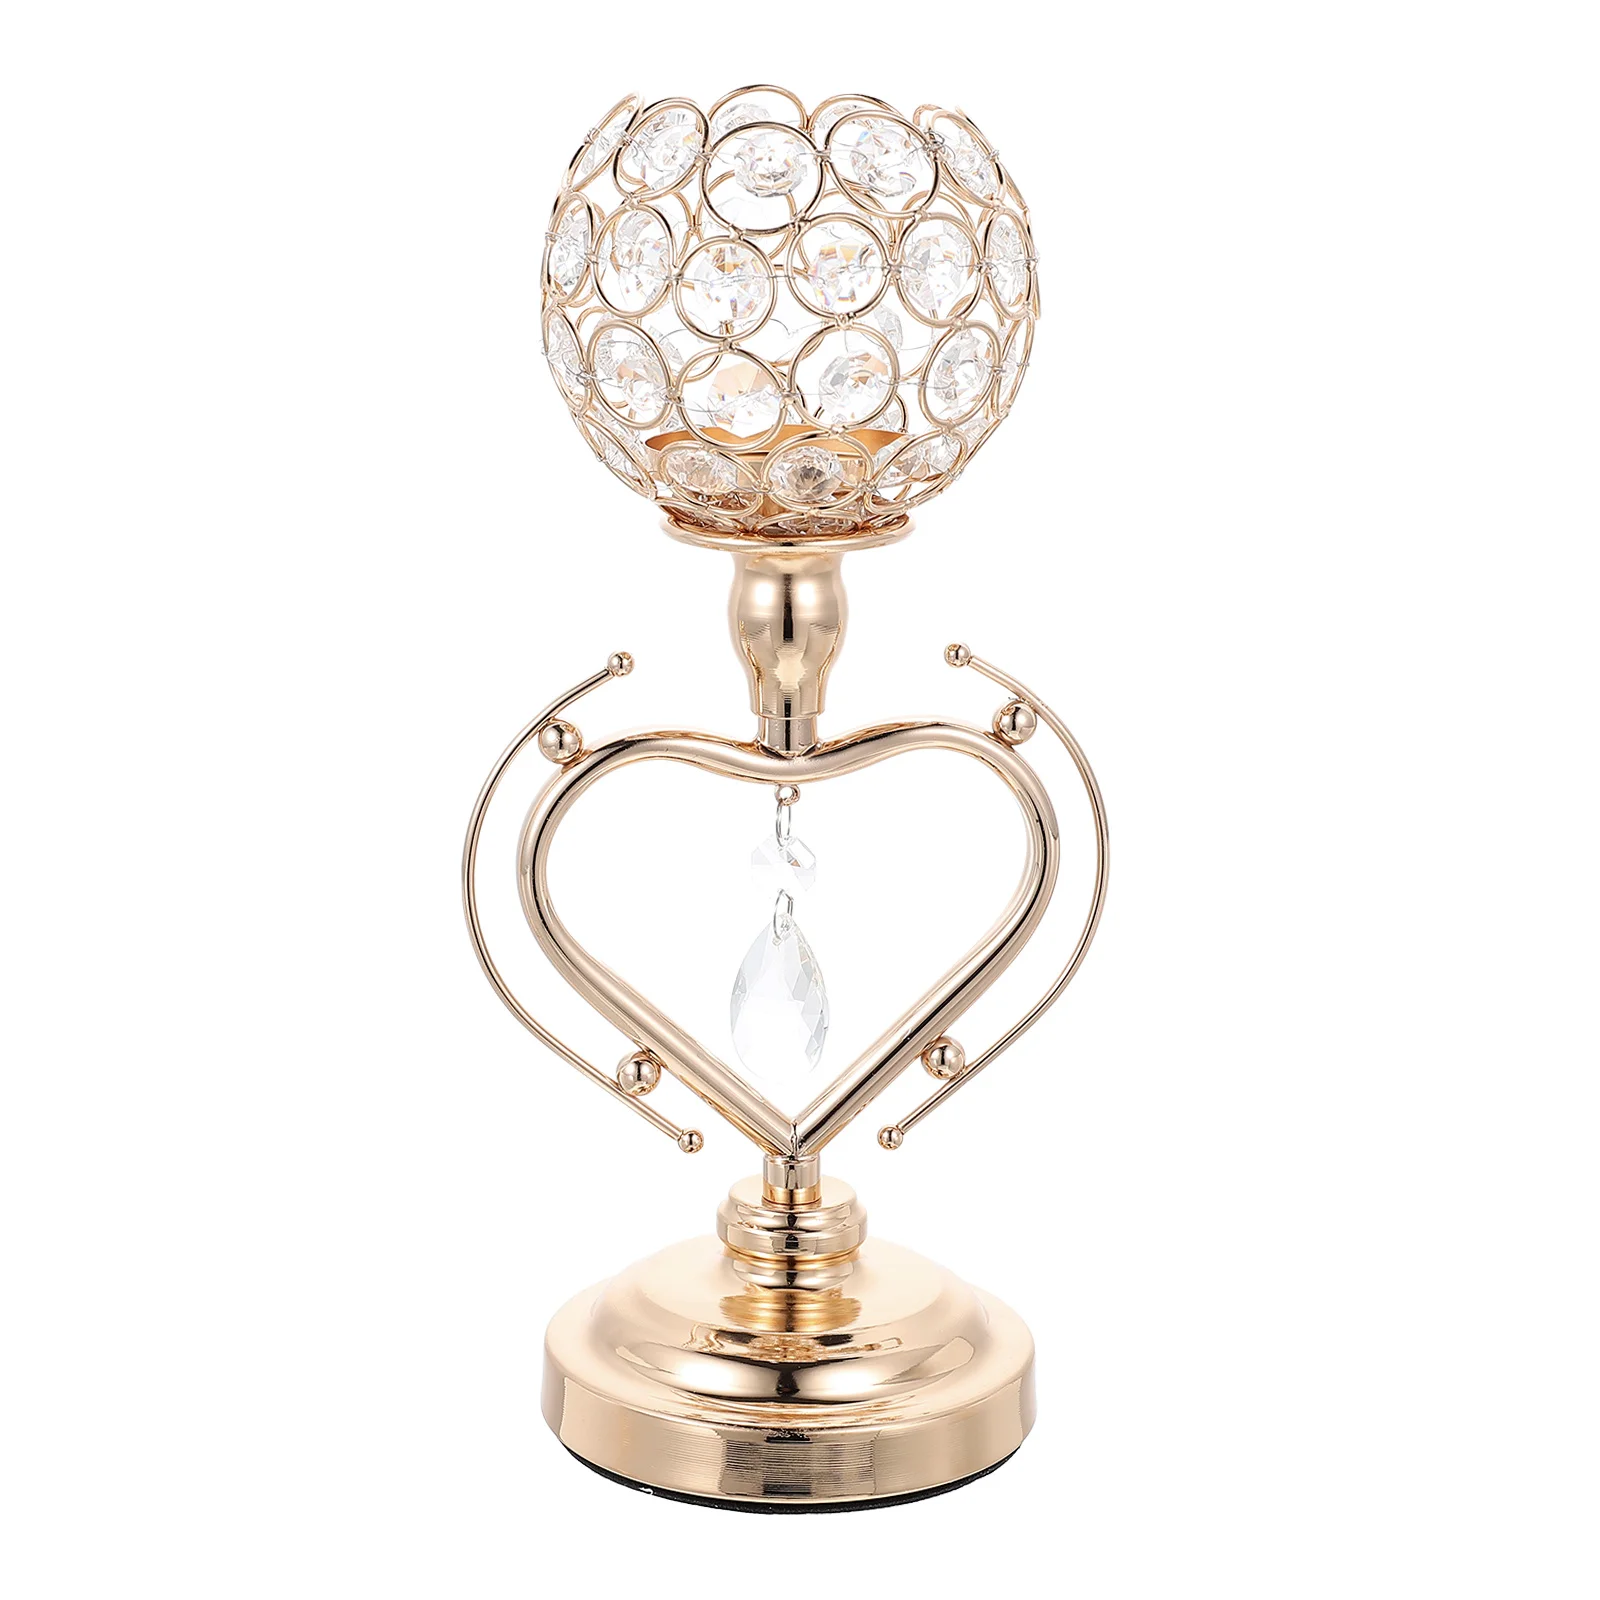 

Candle Holders Crystal Holder Stand Candlestick Tealight Wedding Iron Metal Votive Centerpiece Heart Pillar Candlesticks Tea